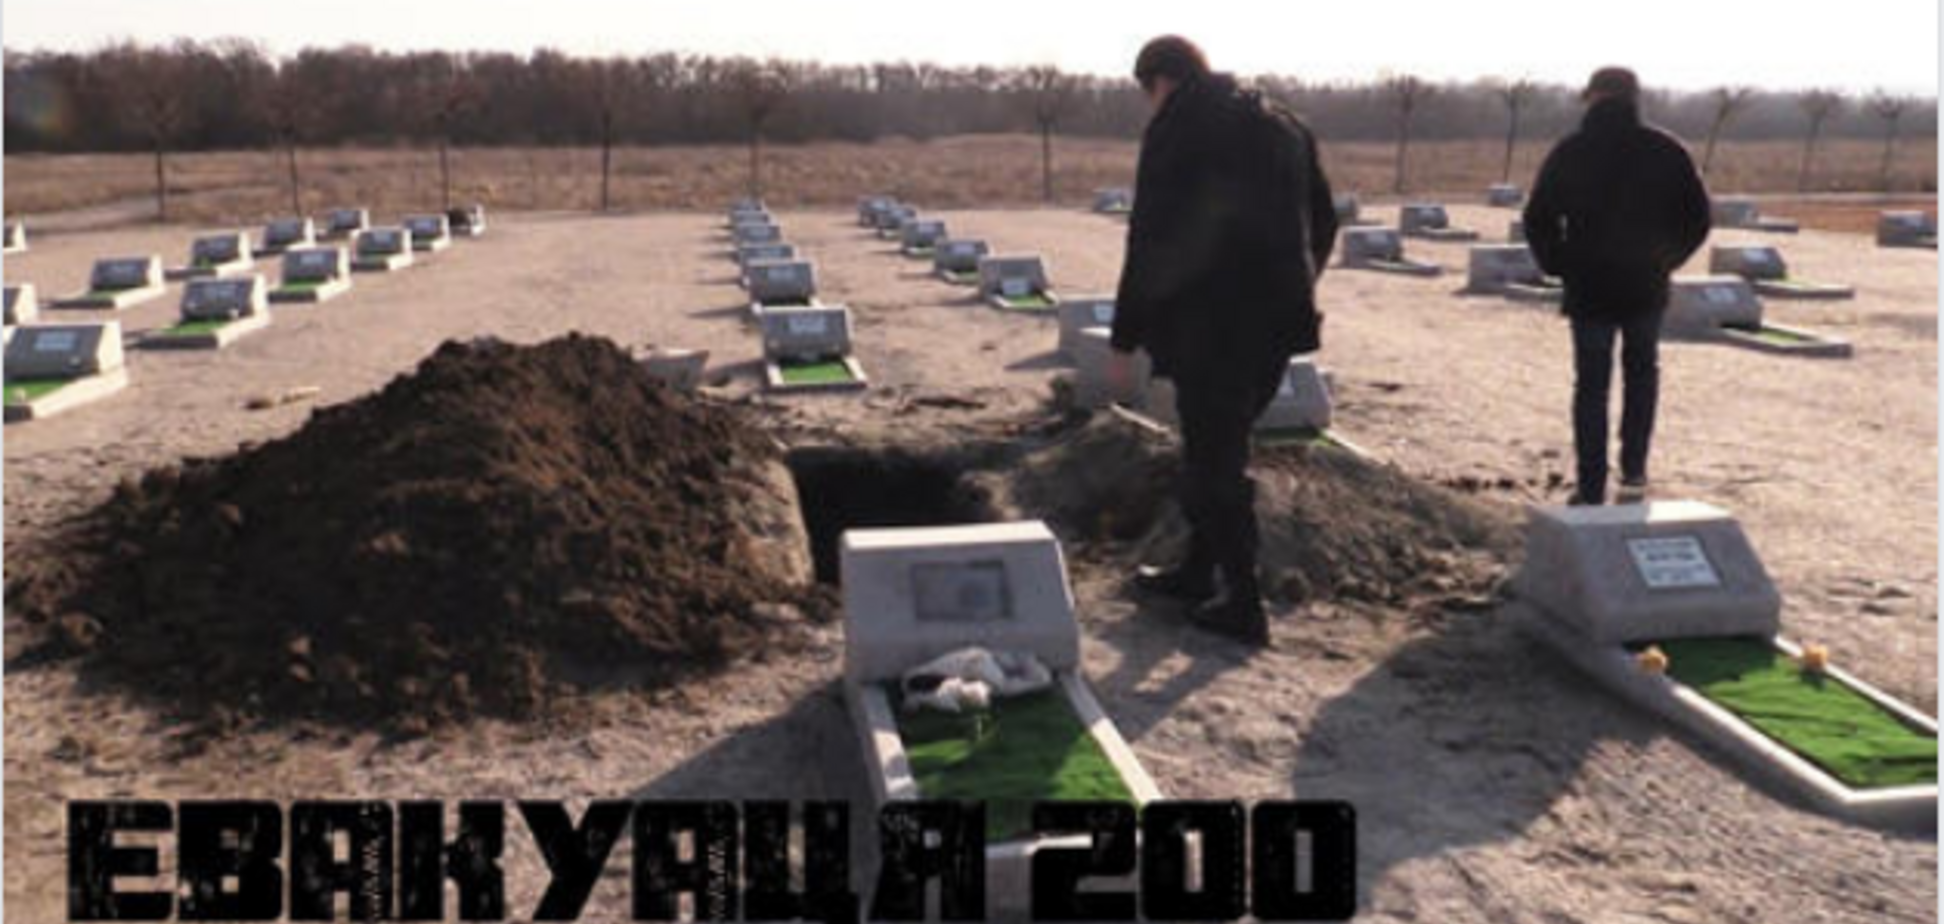 Евакуація-200: майбутній фільм про справжніх героїв України